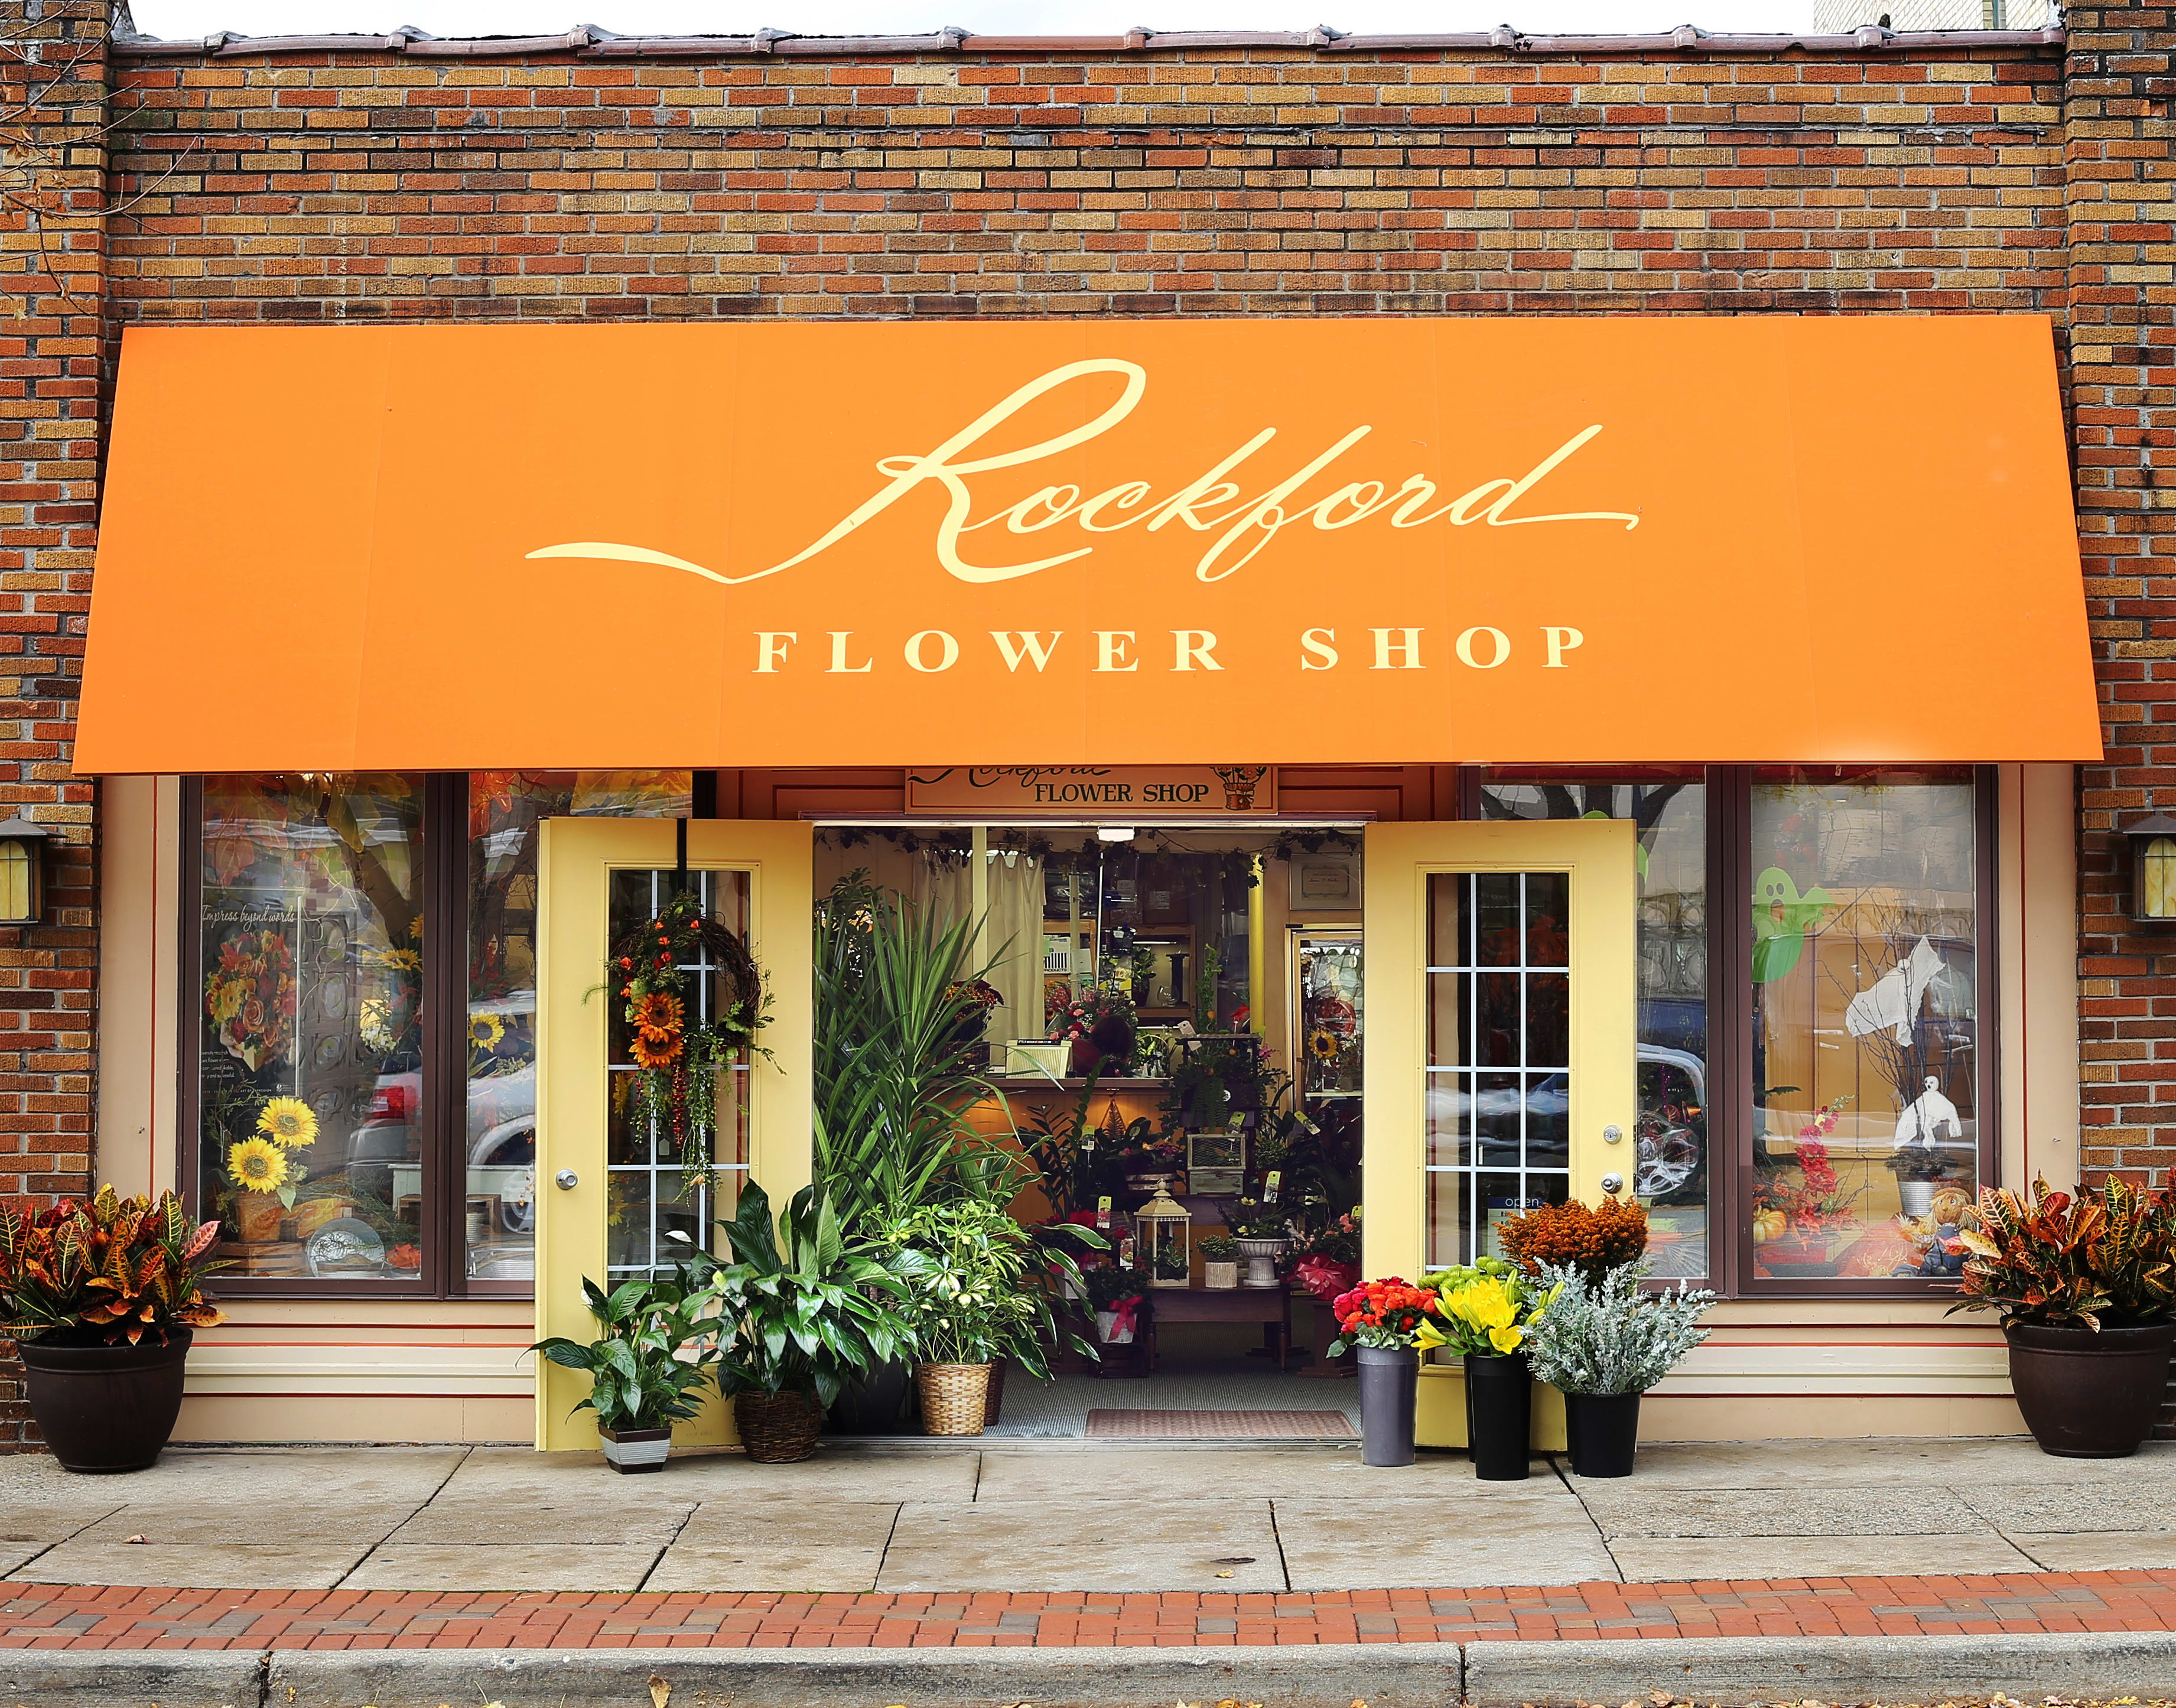 My flower shop. Flower shop. Цветы в магазине одежды. Flowers shop name. Flower shop sign.